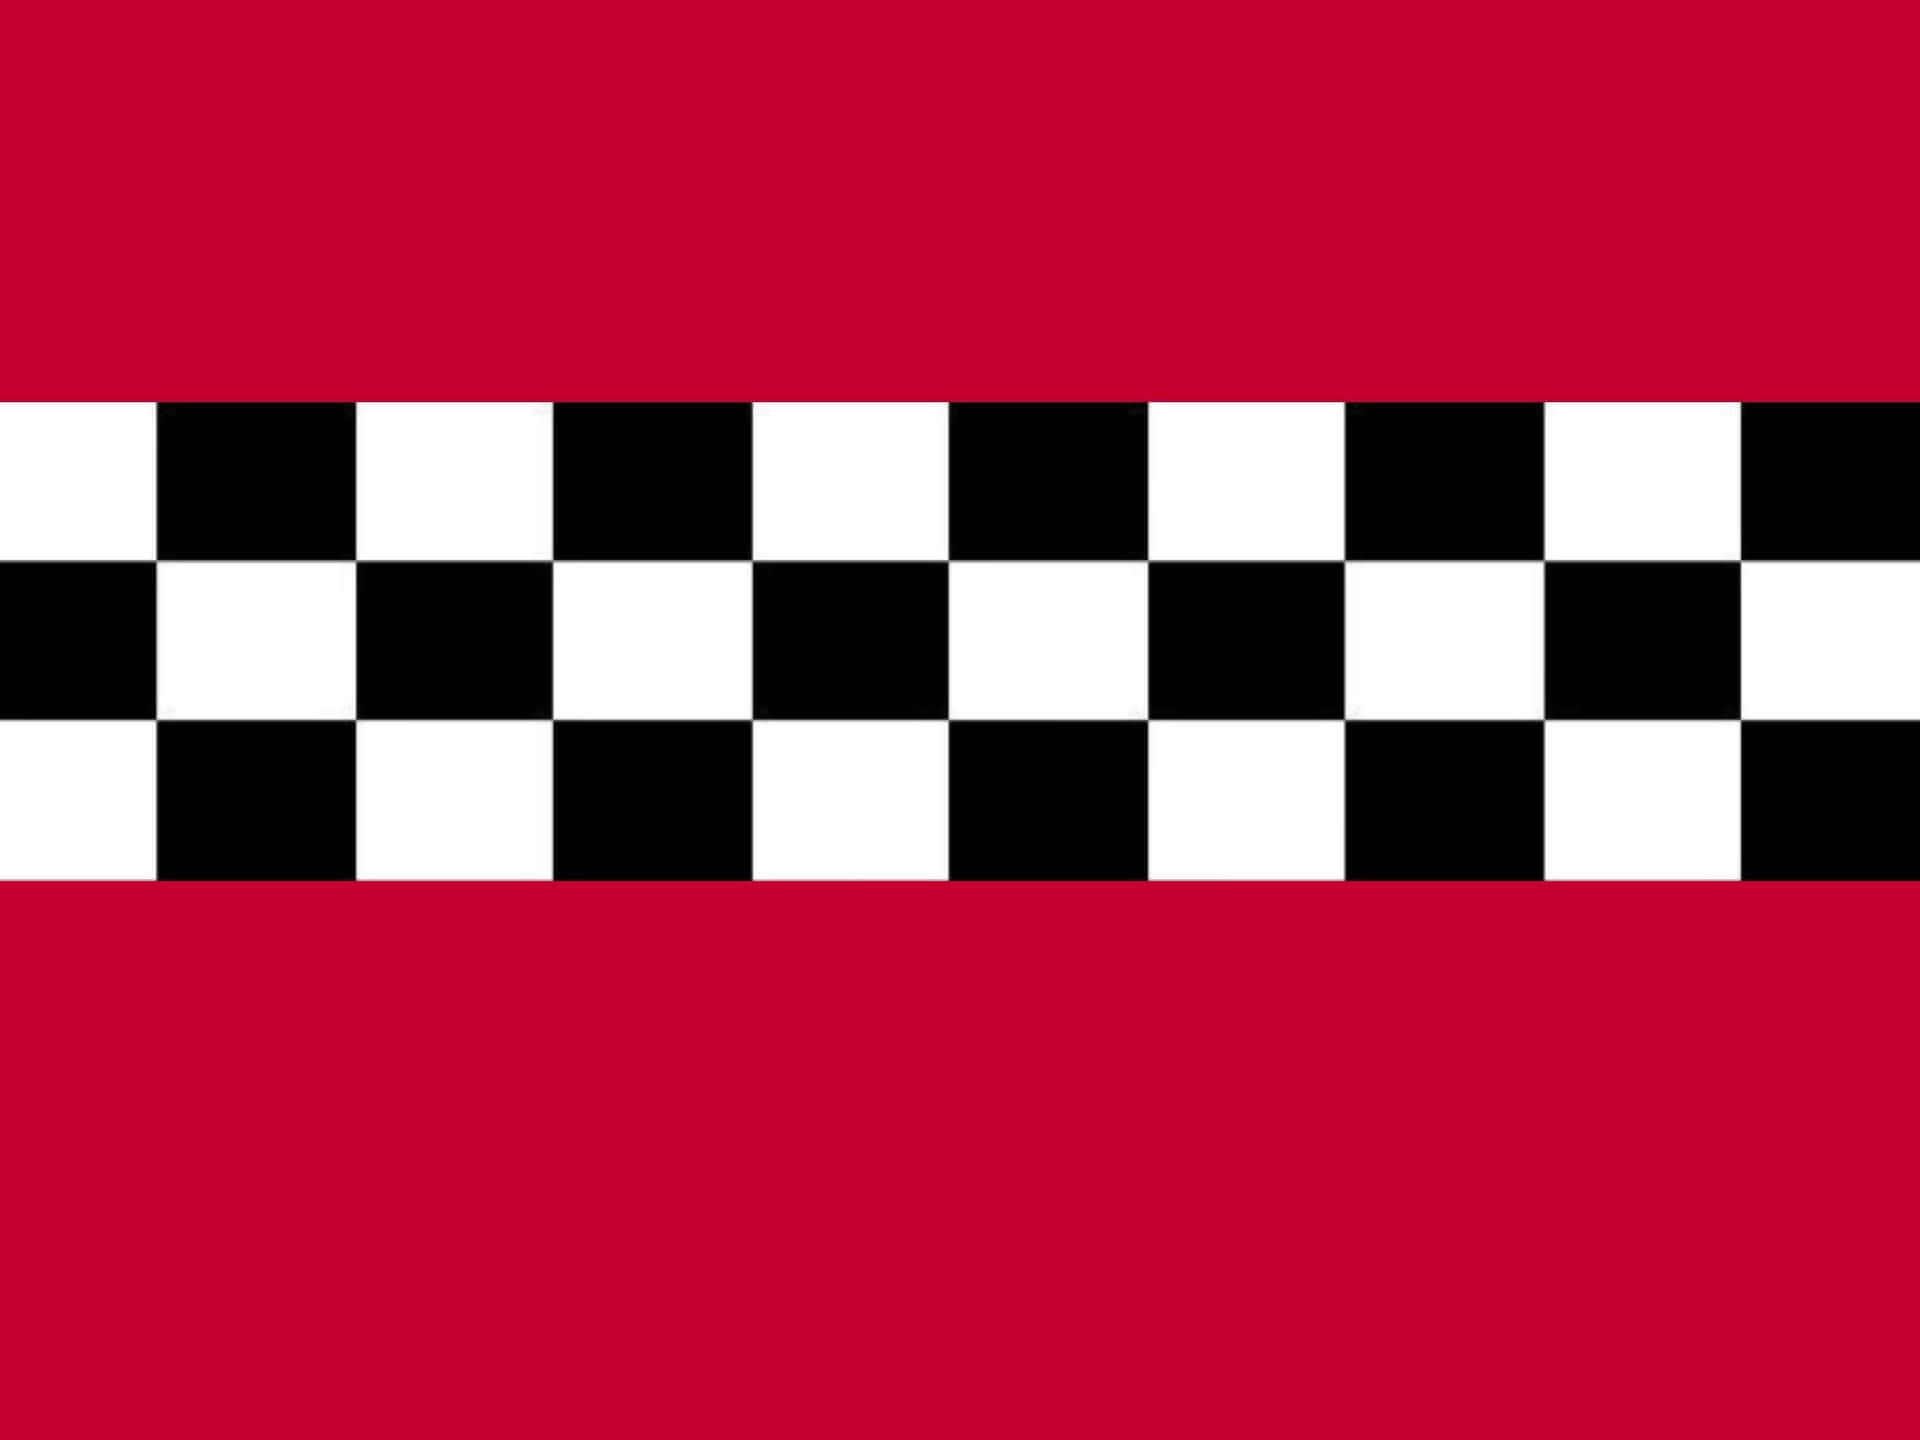 Einekarierte Flagge Auf Rotem Hintergrund Wallpaper